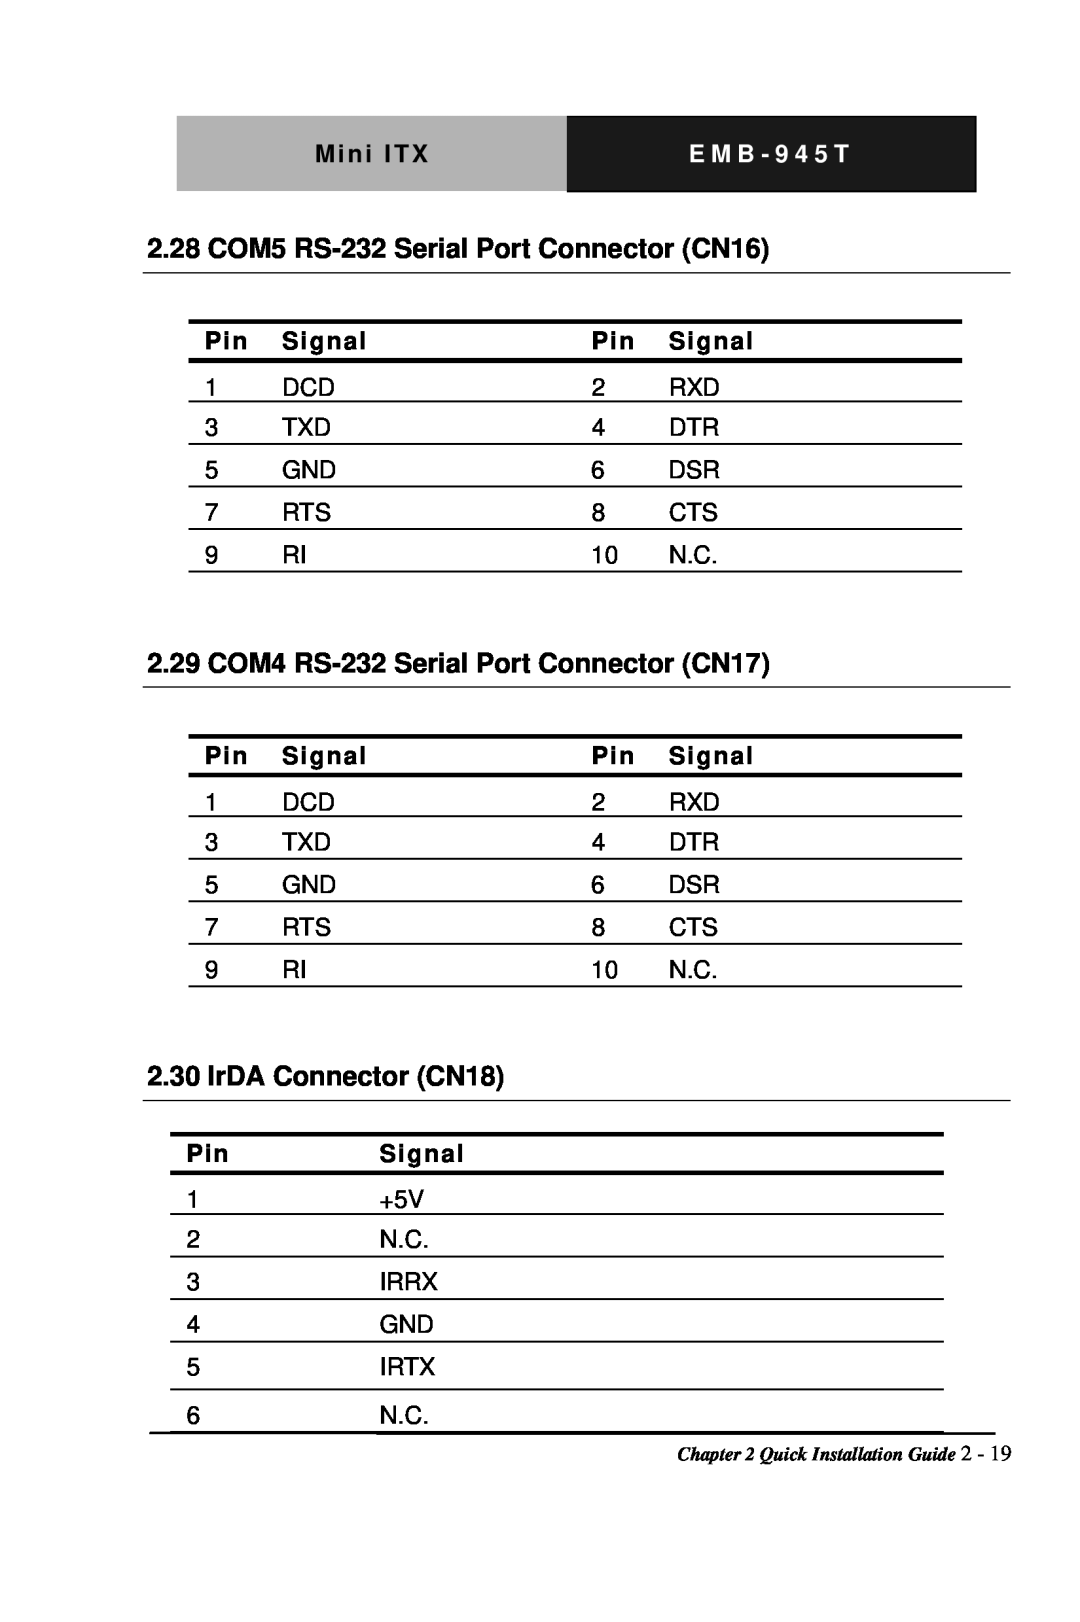 Intel EMB-945T 2.28 COM5 RS-232Serial Port Connector CN16, 2.29 COM4 RS-232Serial Port Connector CN17, IrDA Connector CN18 